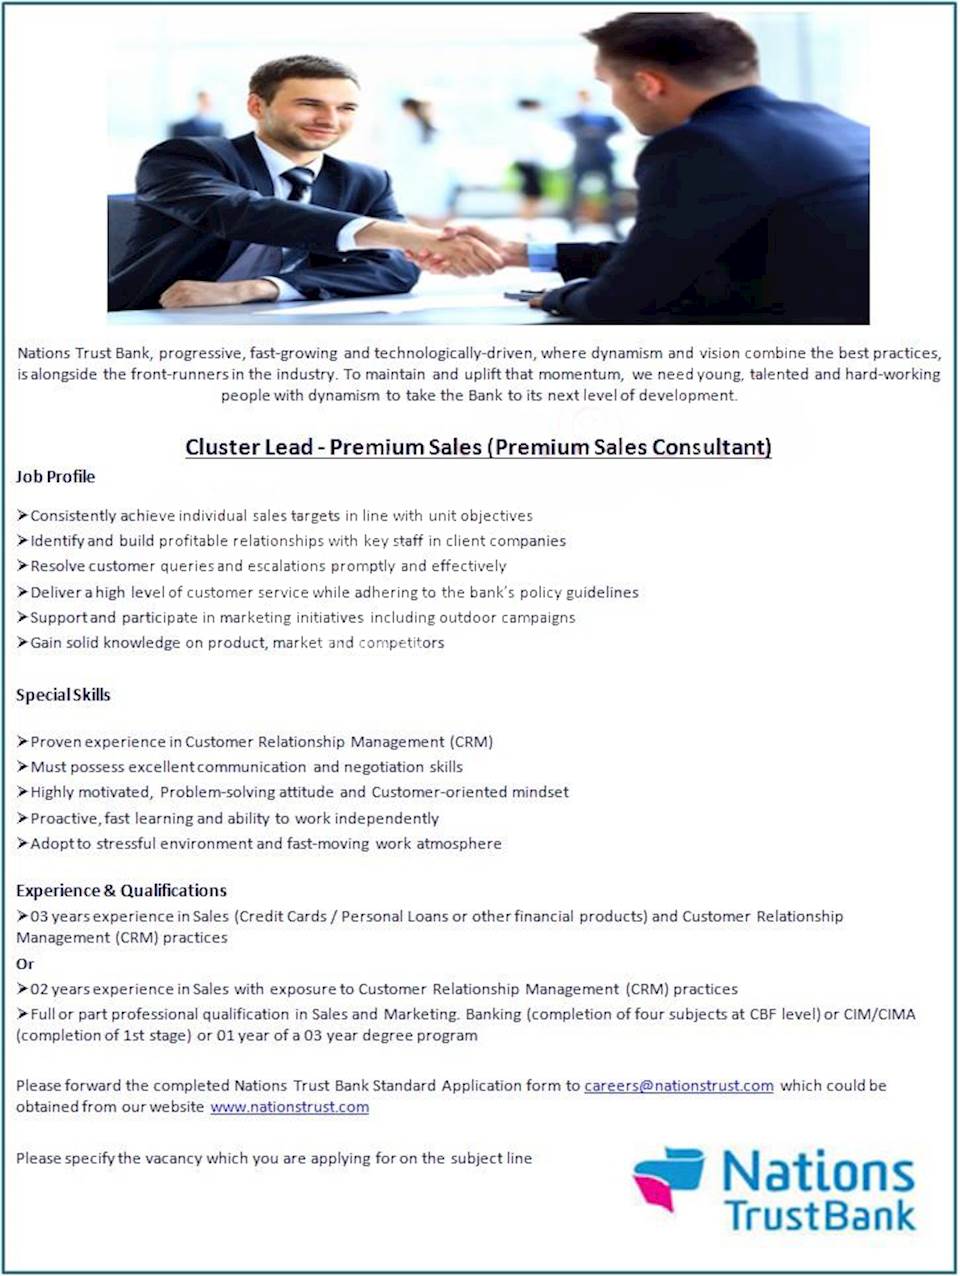 Cluster Lead - Premium Sales (Premium Sales Consultant)